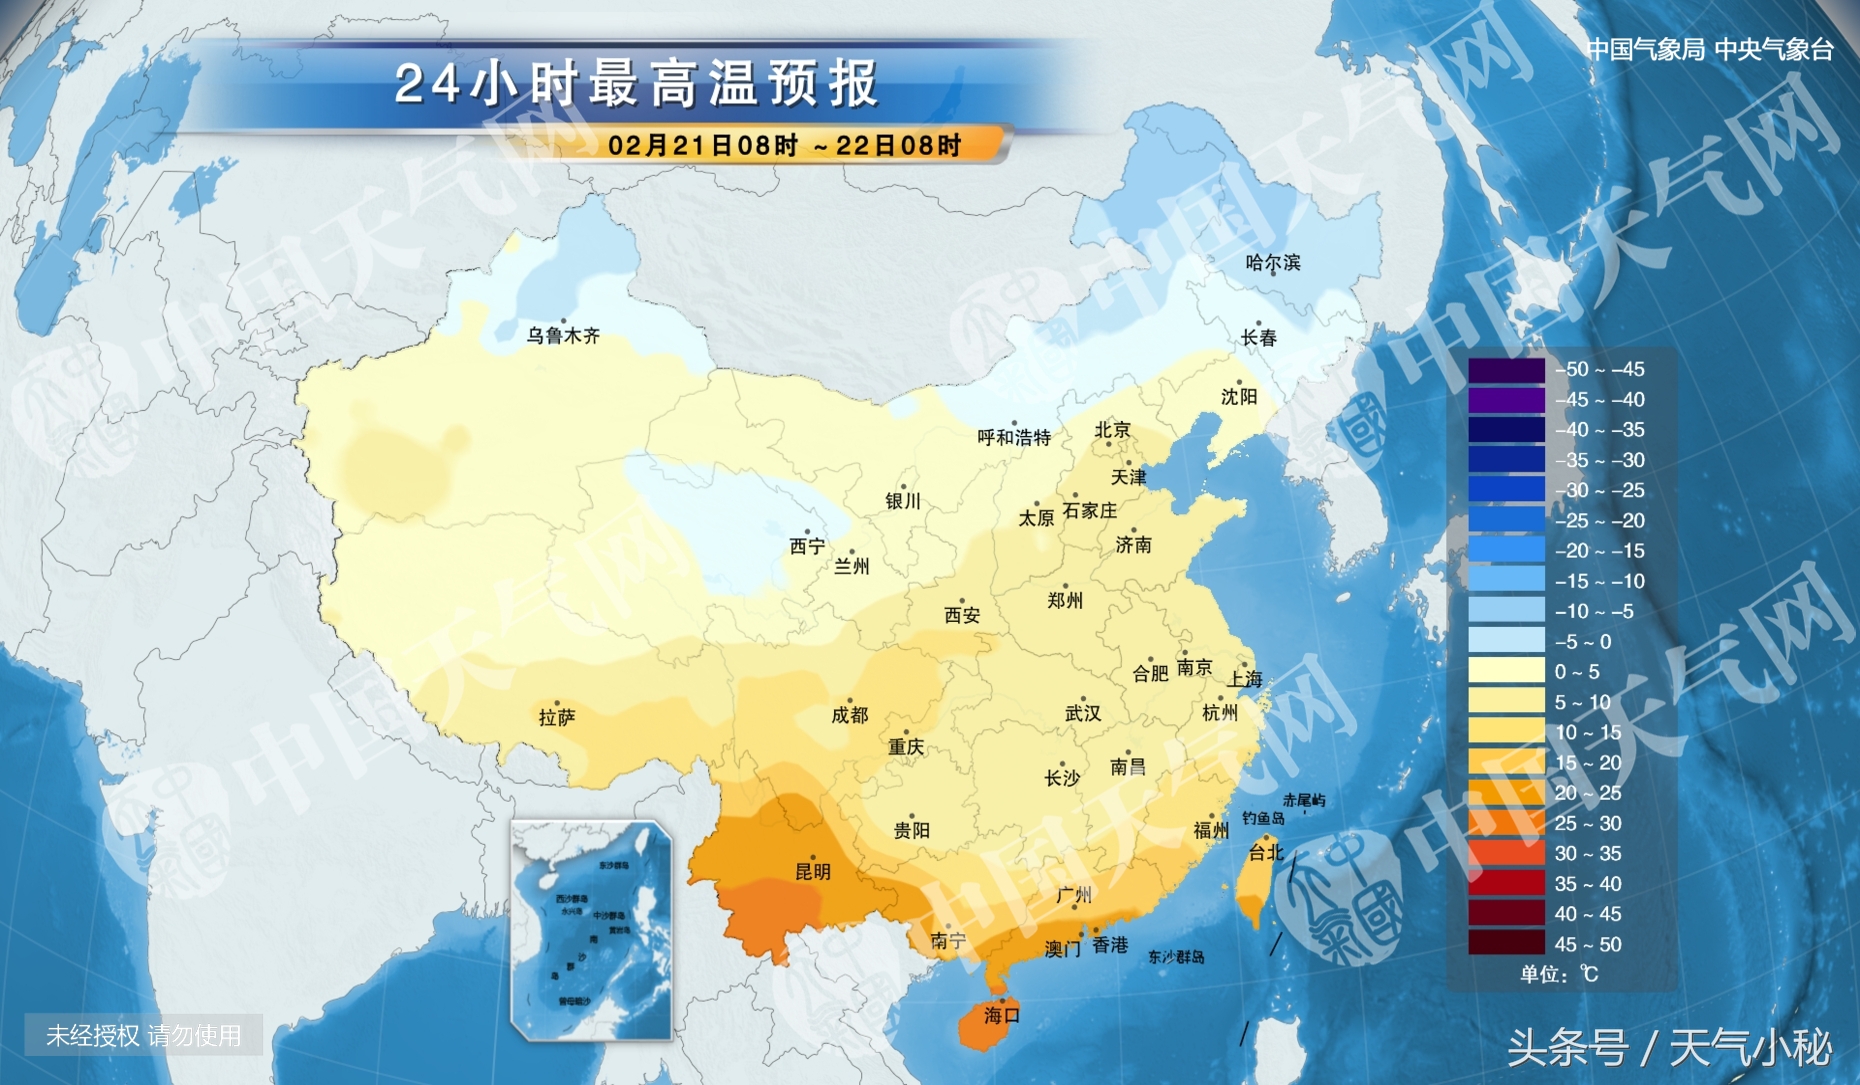 02月21日晋城天气预报